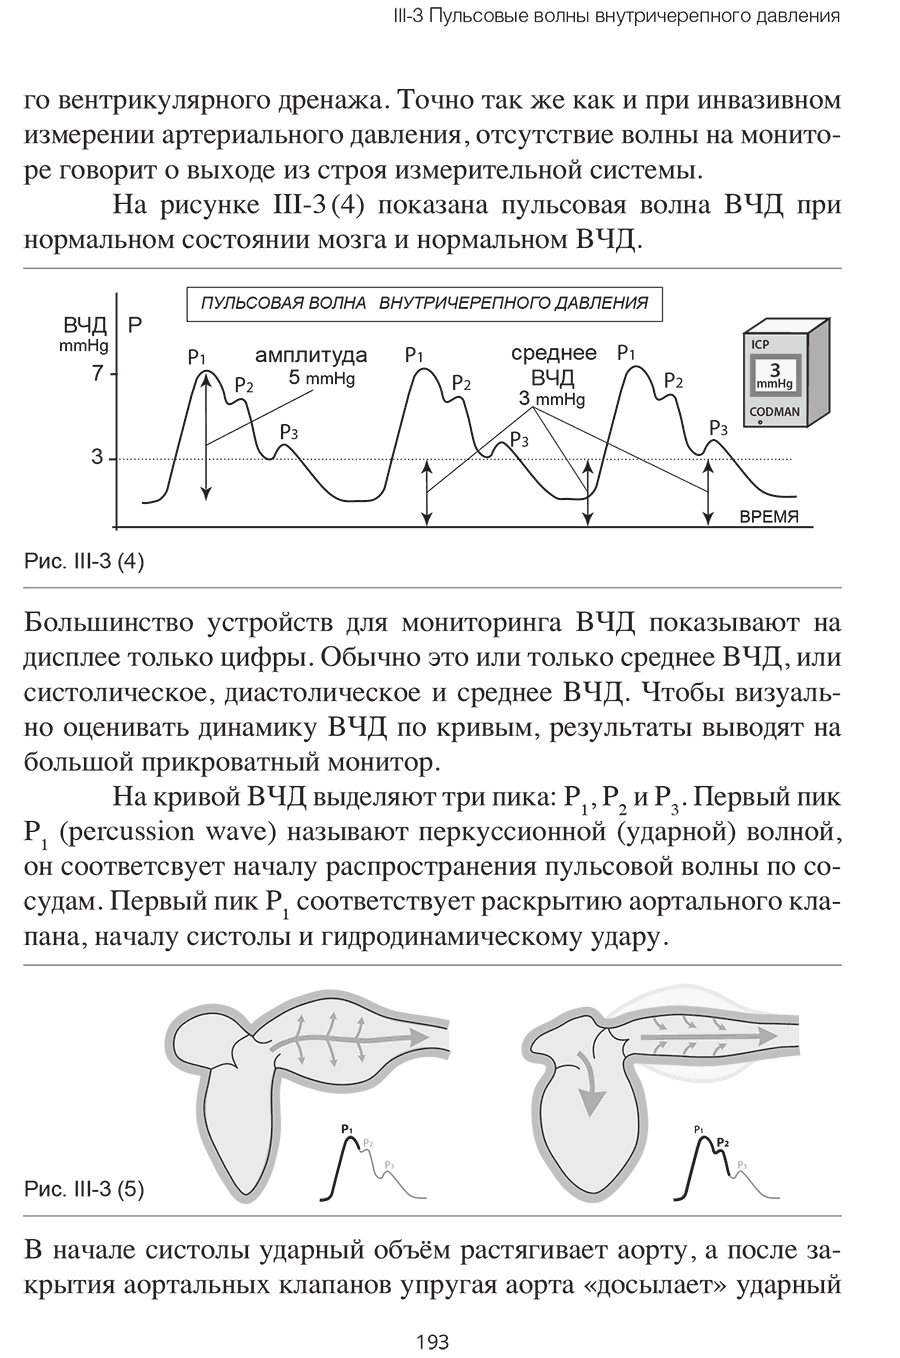 Примеры страниц из книги "Внутричерепная гипертензия. Патофизиология. Мониторинг. Лечение"